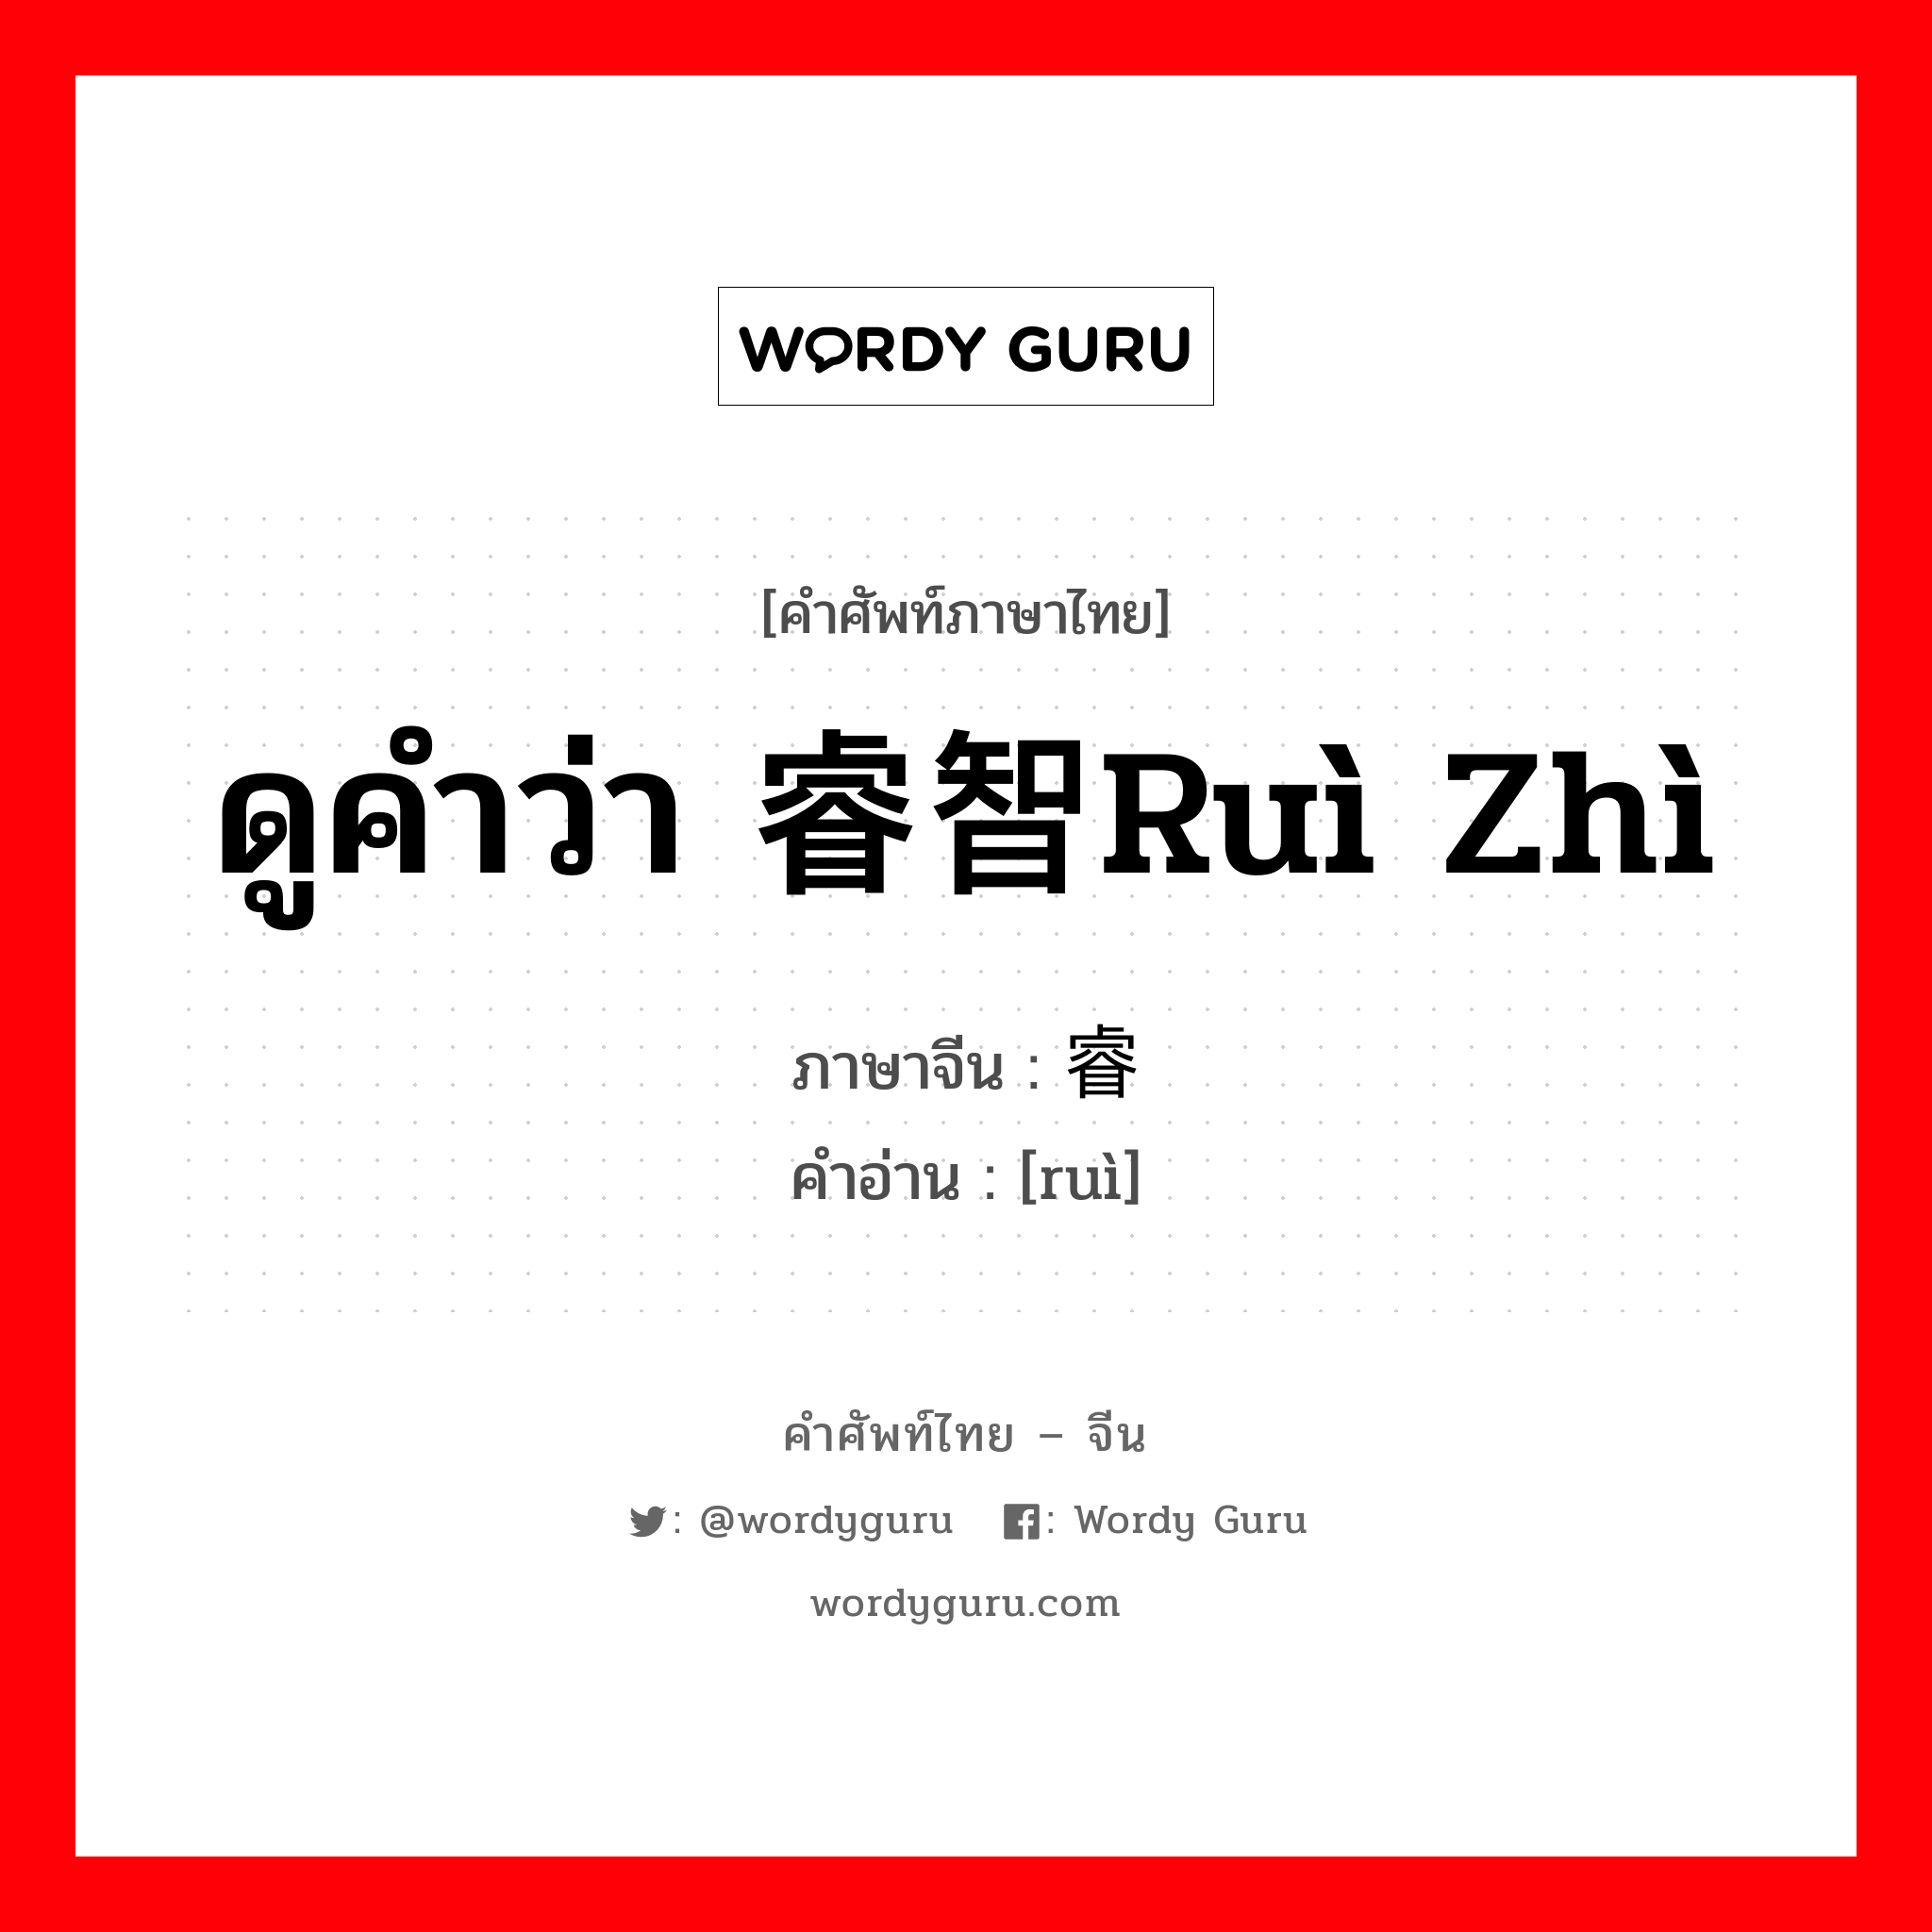 ดูคำว่า 睿智ruì zhì ภาษาจีนคืออะไร, คำศัพท์ภาษาไทย - จีน ดูคำว่า 睿智ruì zhì ภาษาจีน 睿 คำอ่าน [ruì]